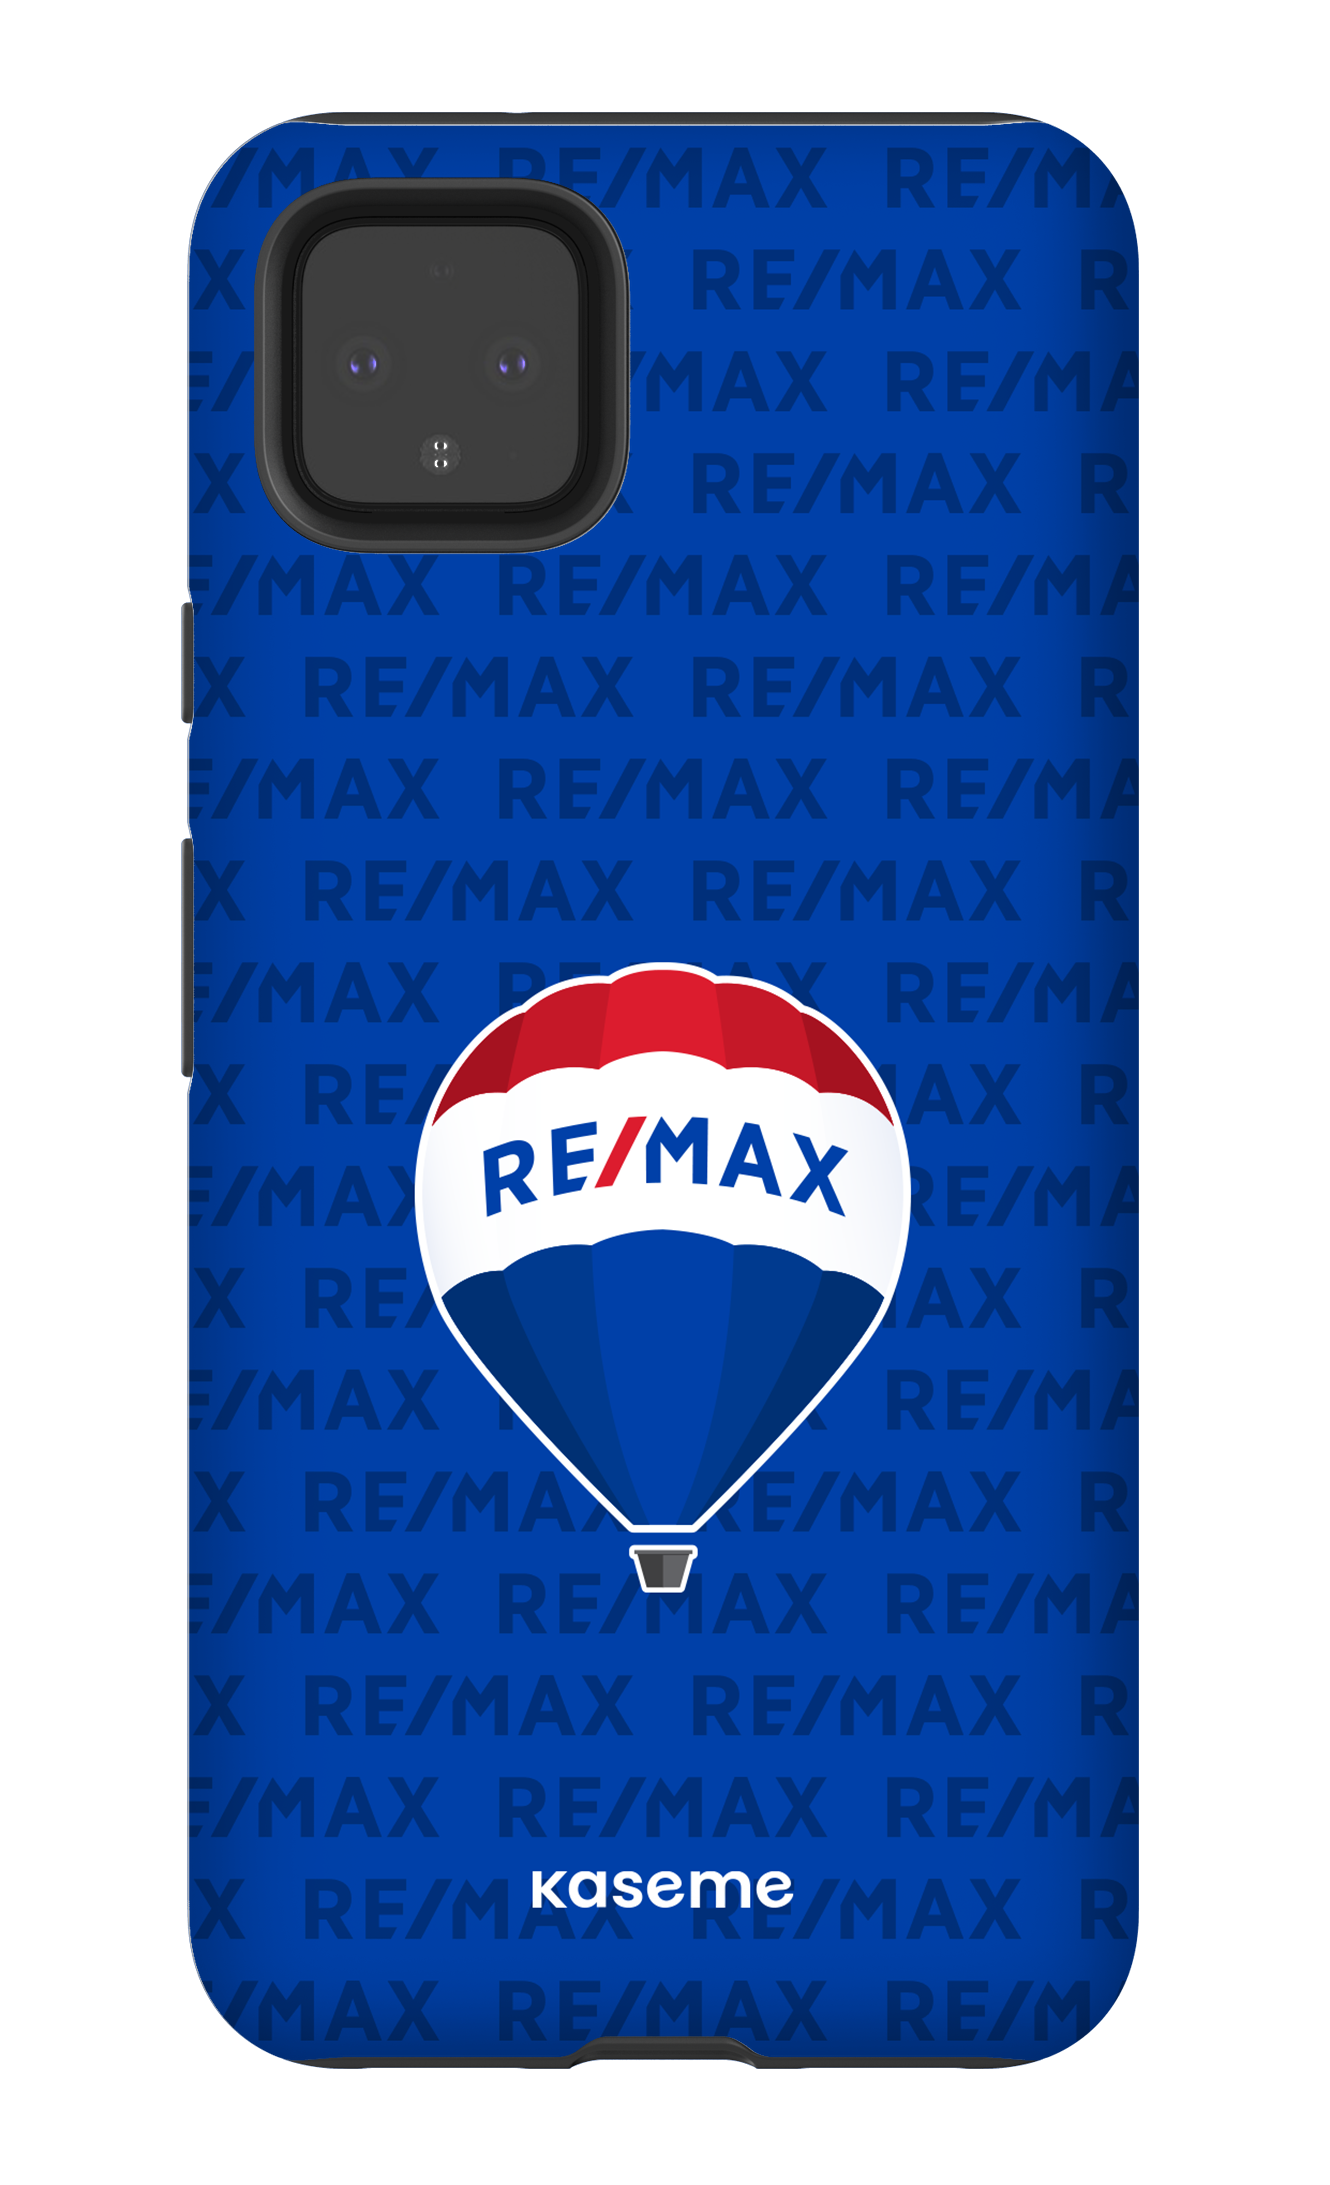 Remax pattern Bleu - Google Pixel 4 XL